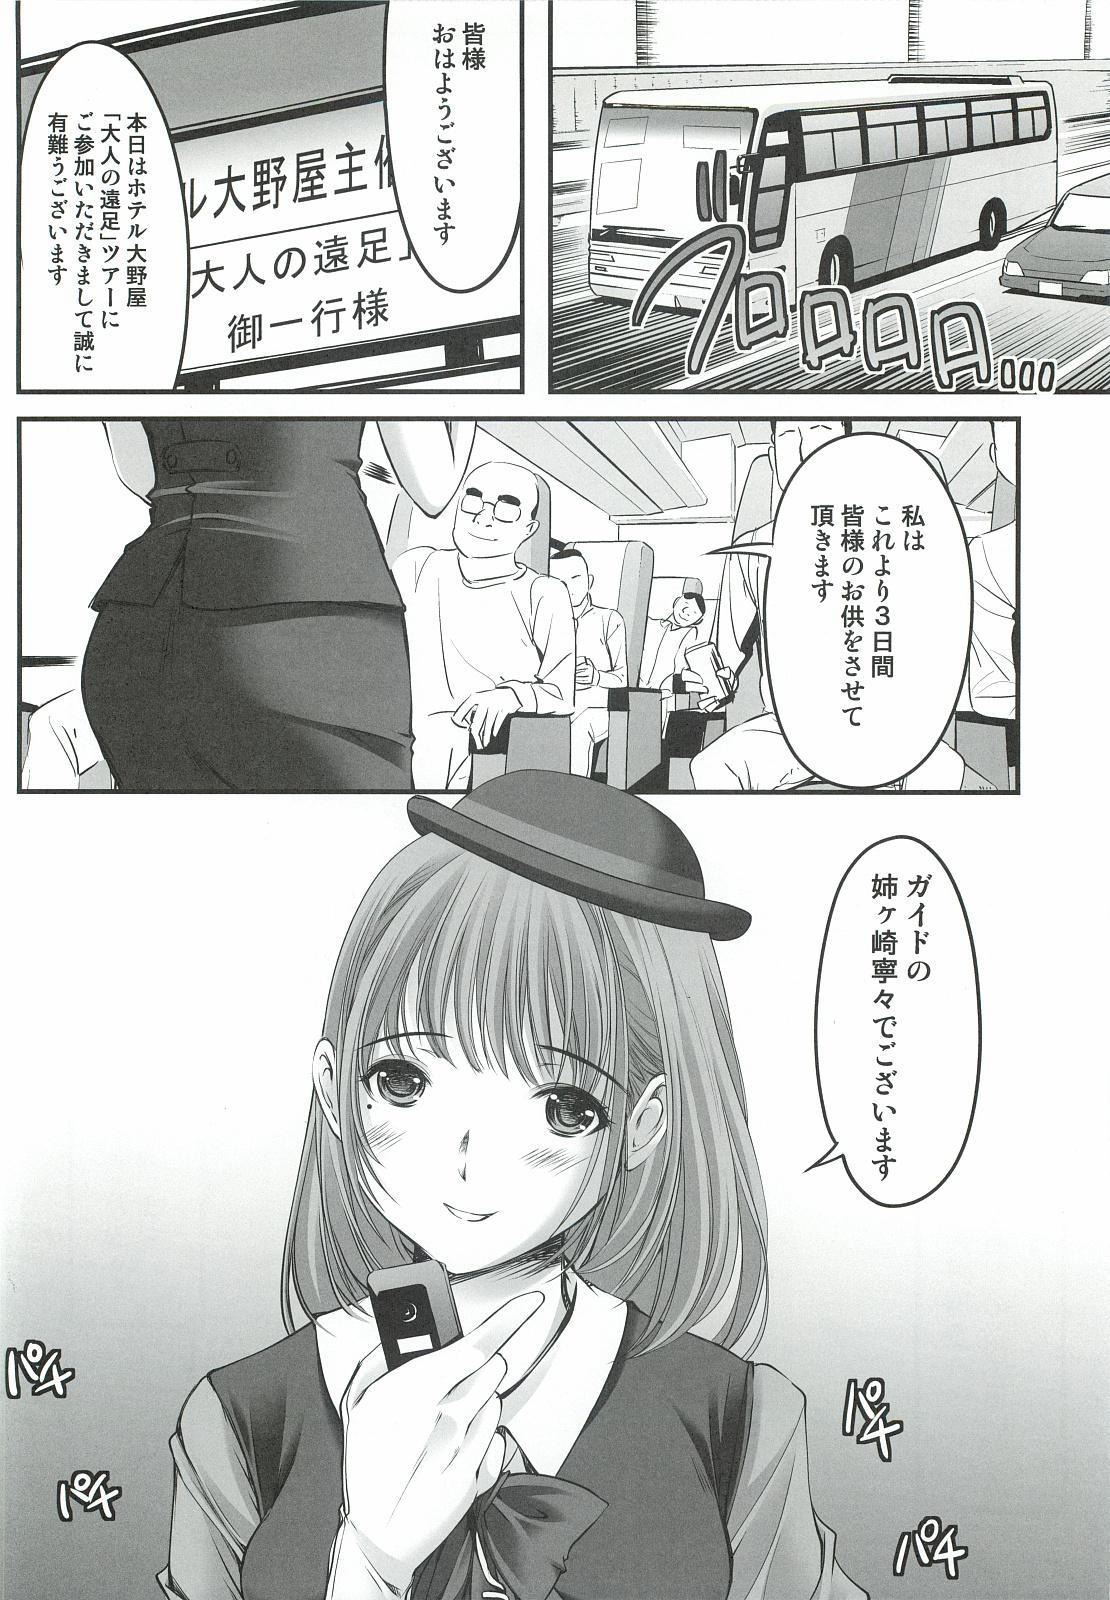 Swingers Oonoya Saiken Funtou Nisshi - Anegasaki Nene Bus Guide hen - Love plus Shoplifter - Page 7